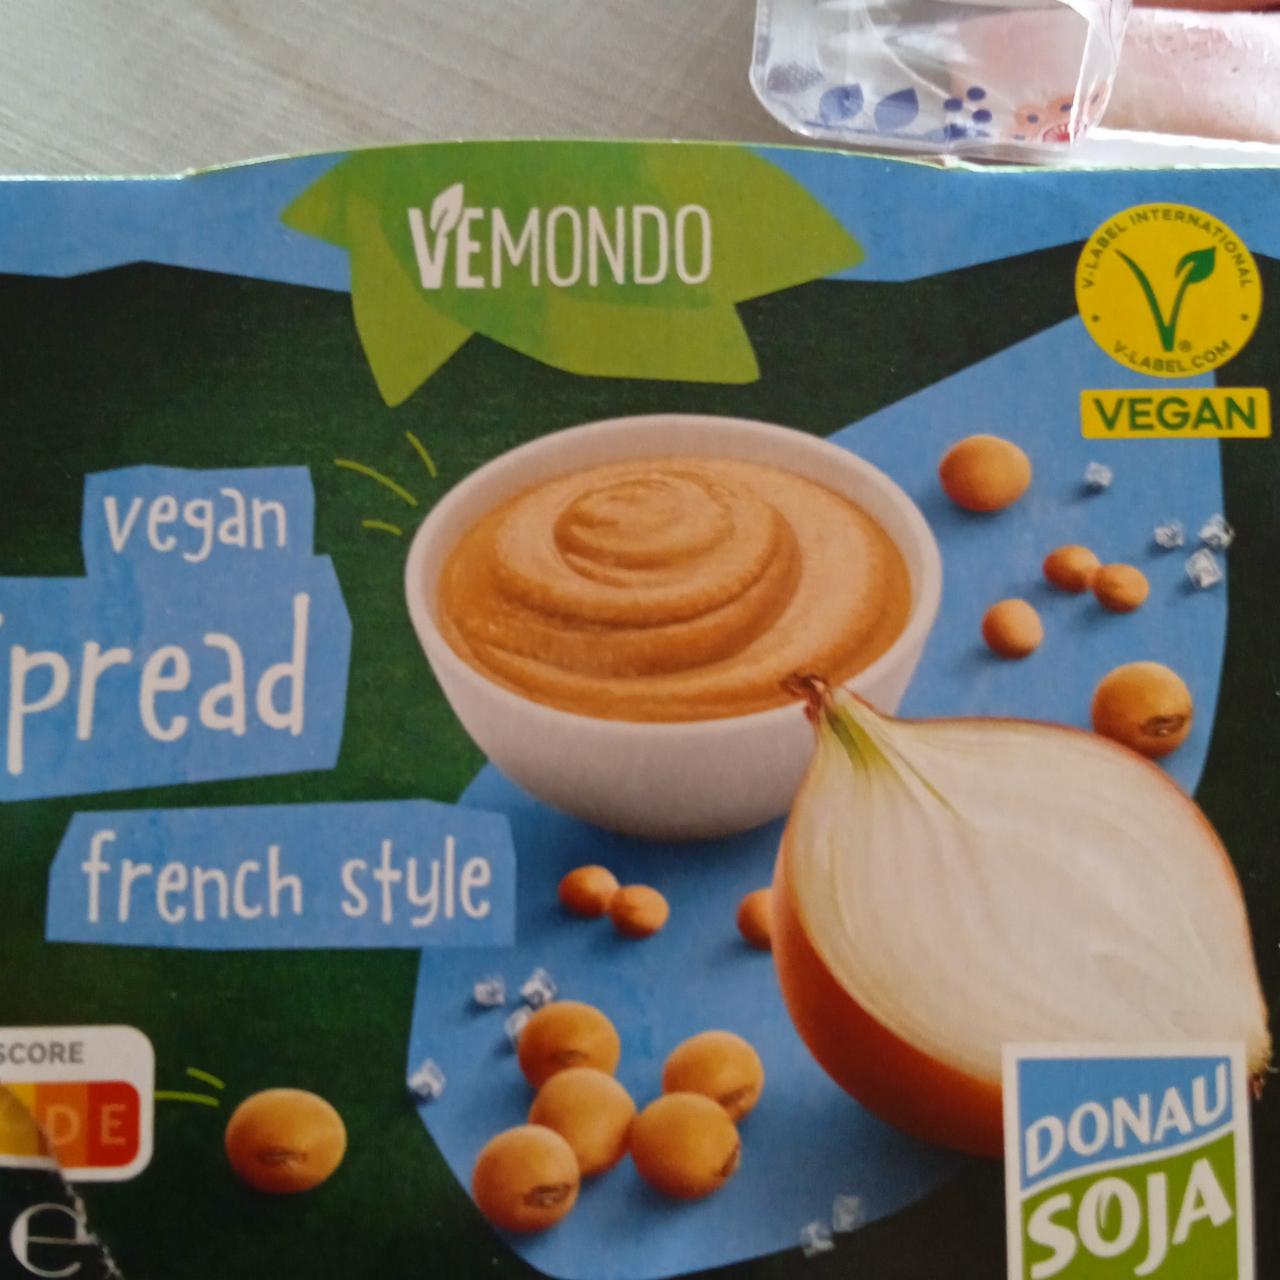 Fotografie - Vegan spread french style Vemondo